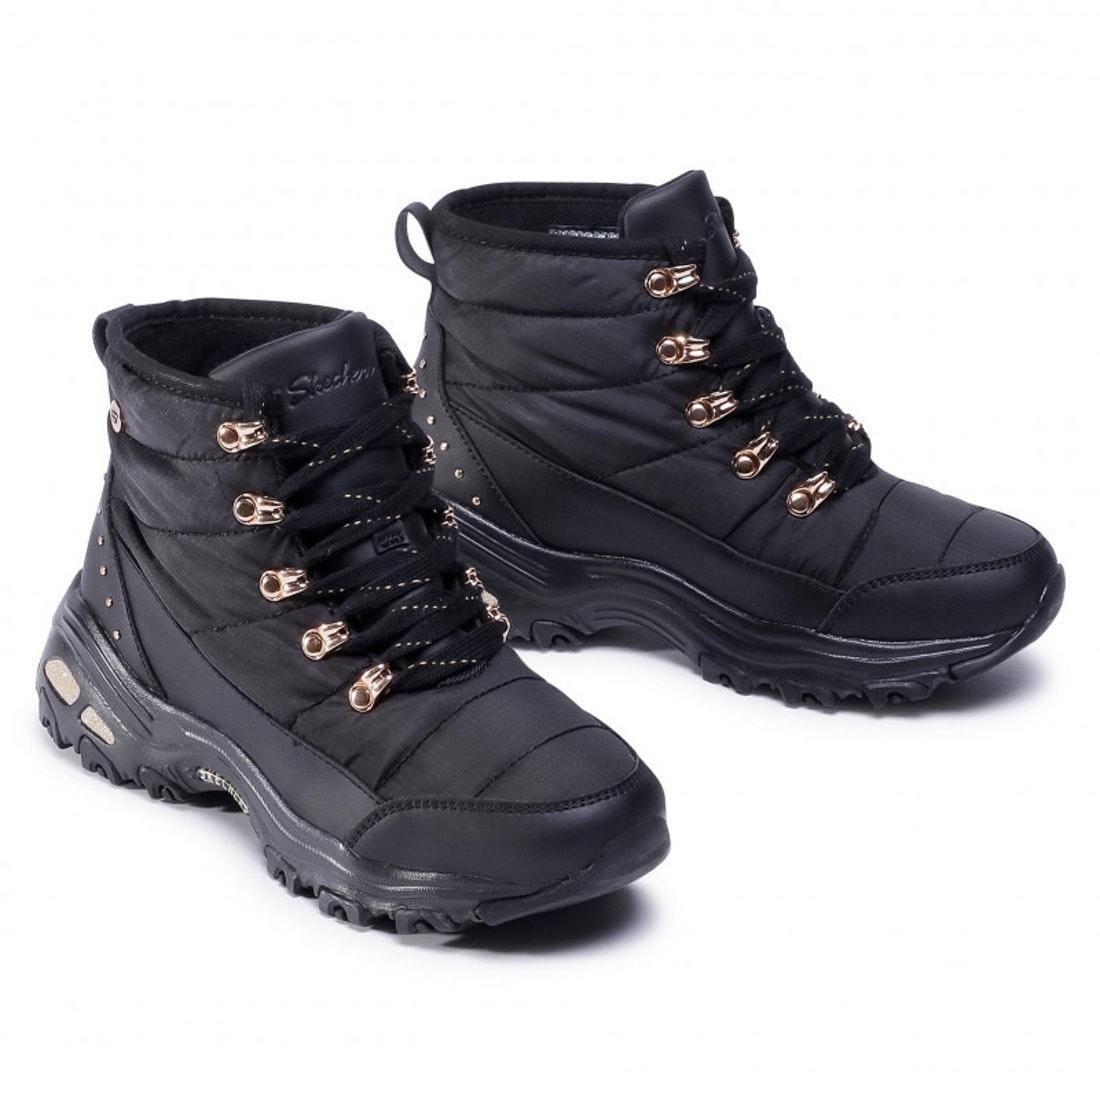 Ботинки женские утепленные SKECHERS D'LITES Women's insulated boots черный/золотой